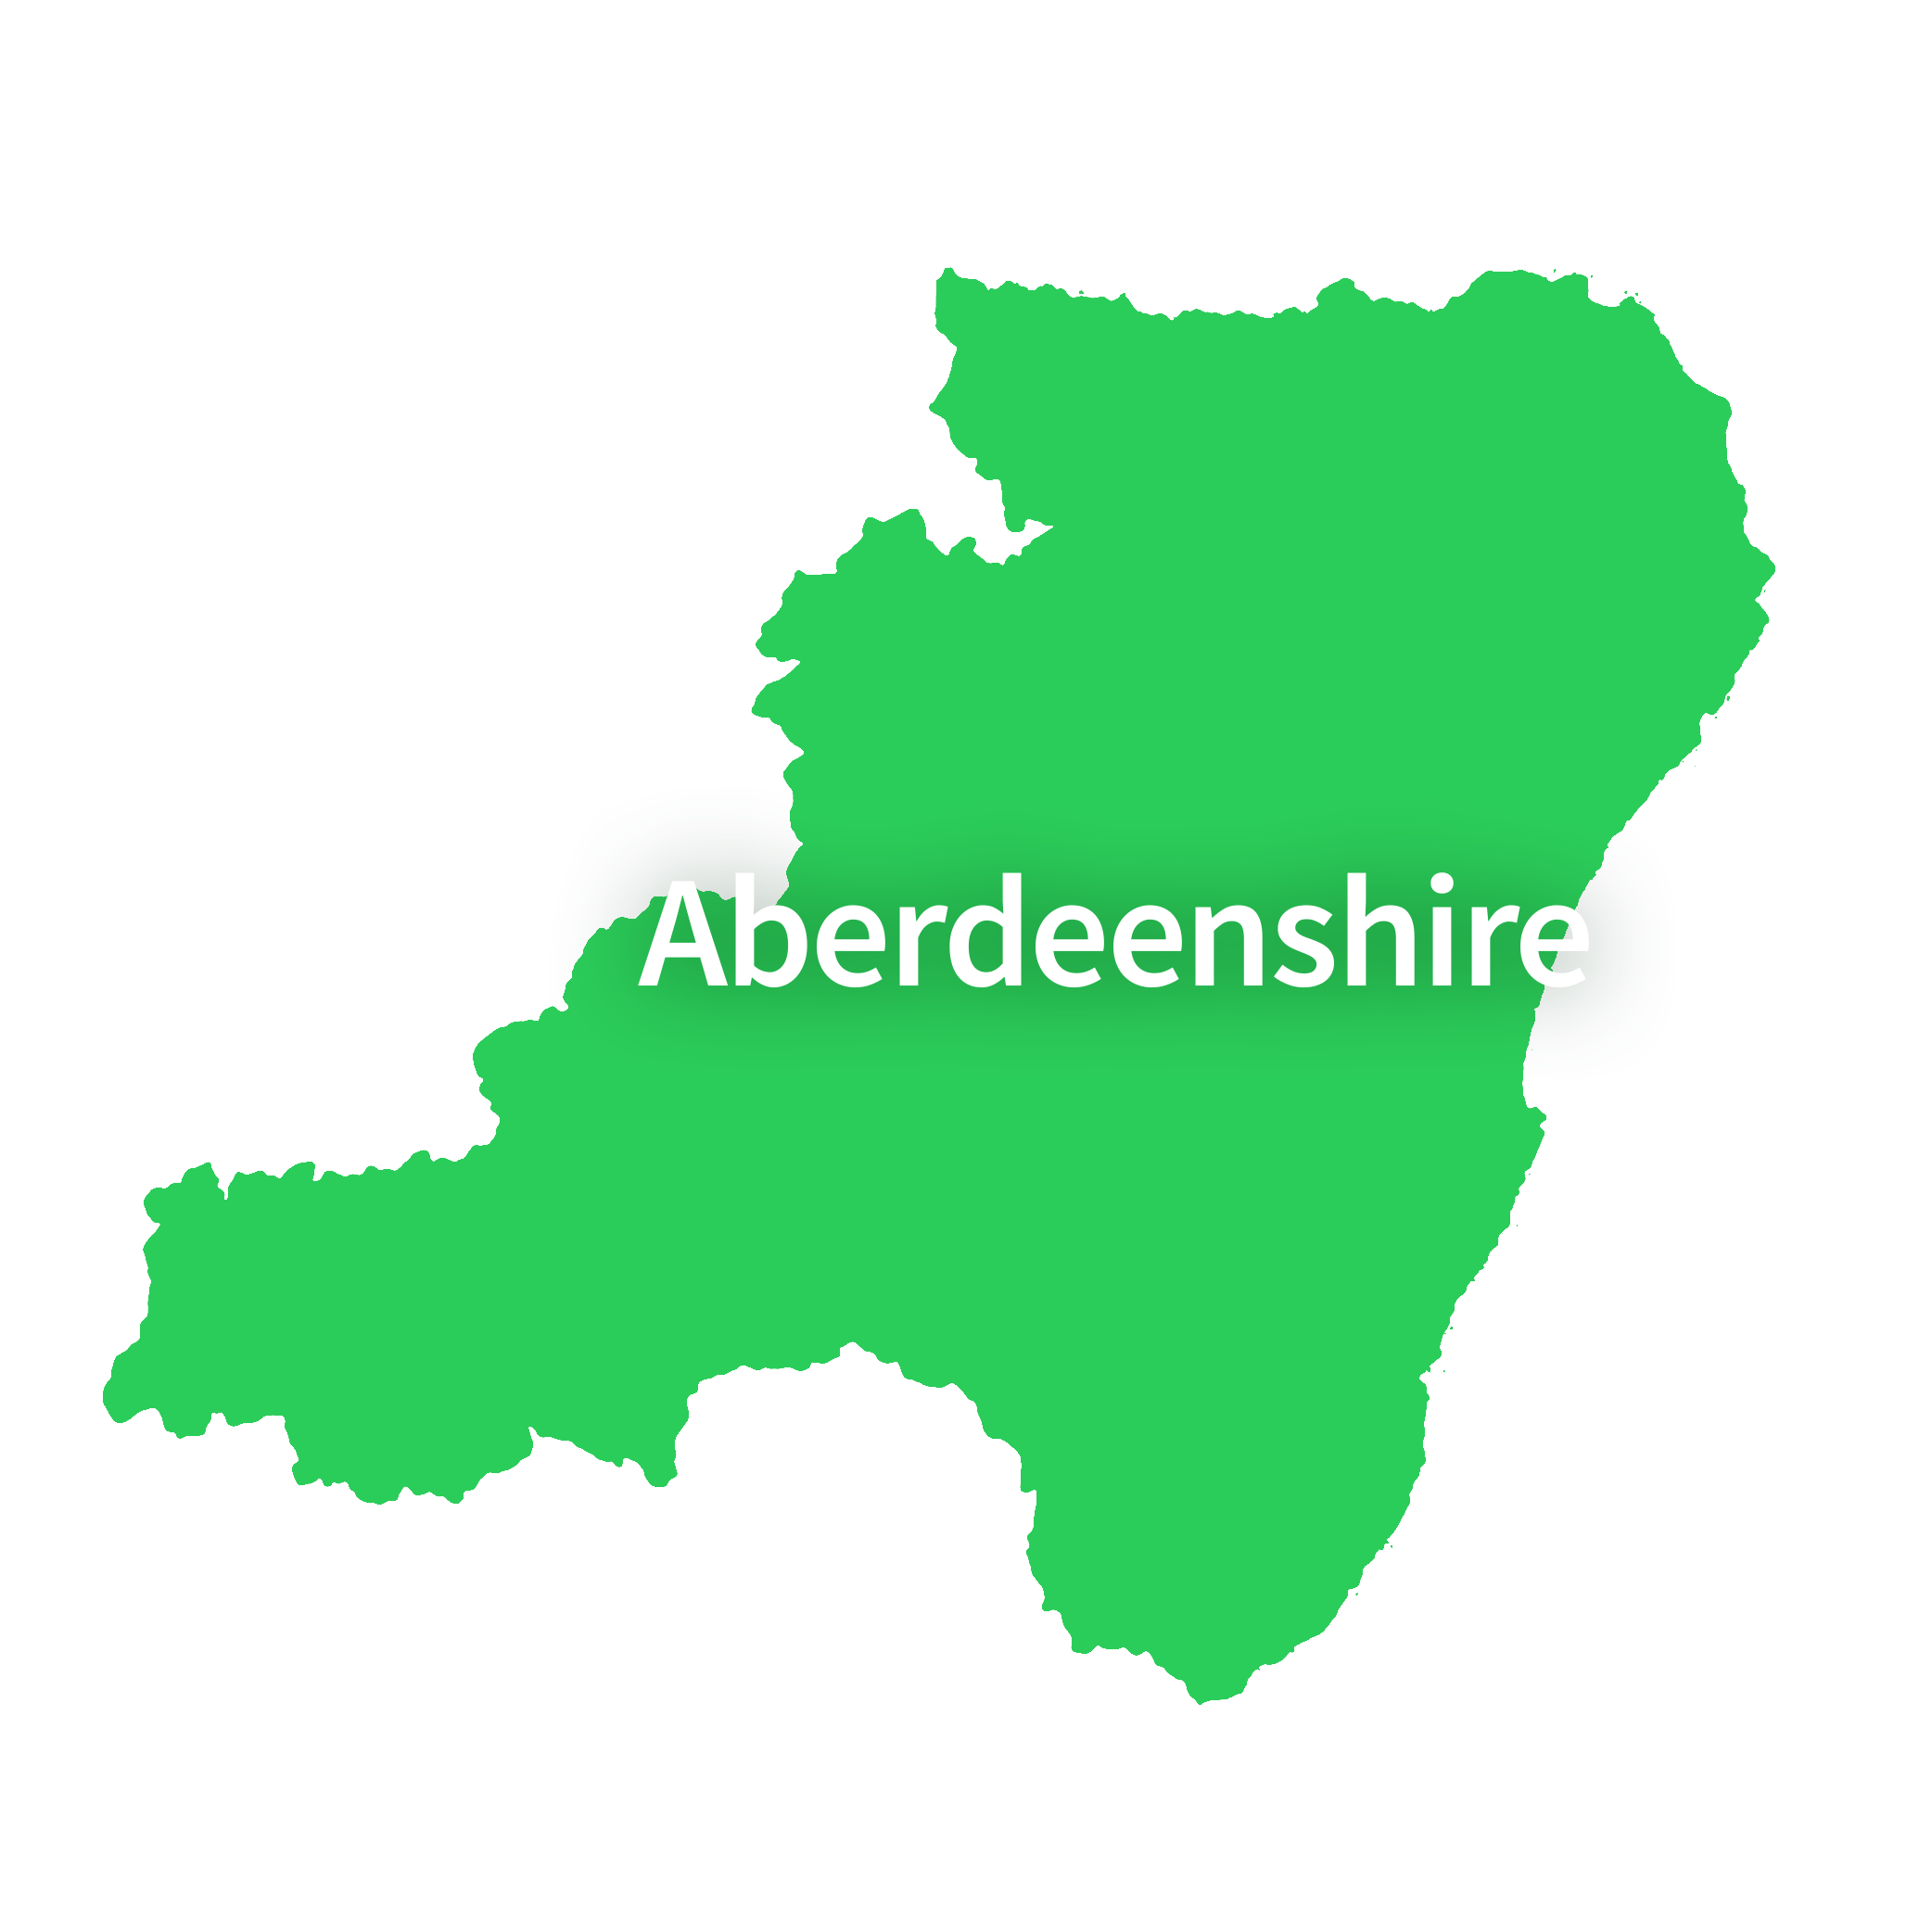 Map of Aberdeenshire